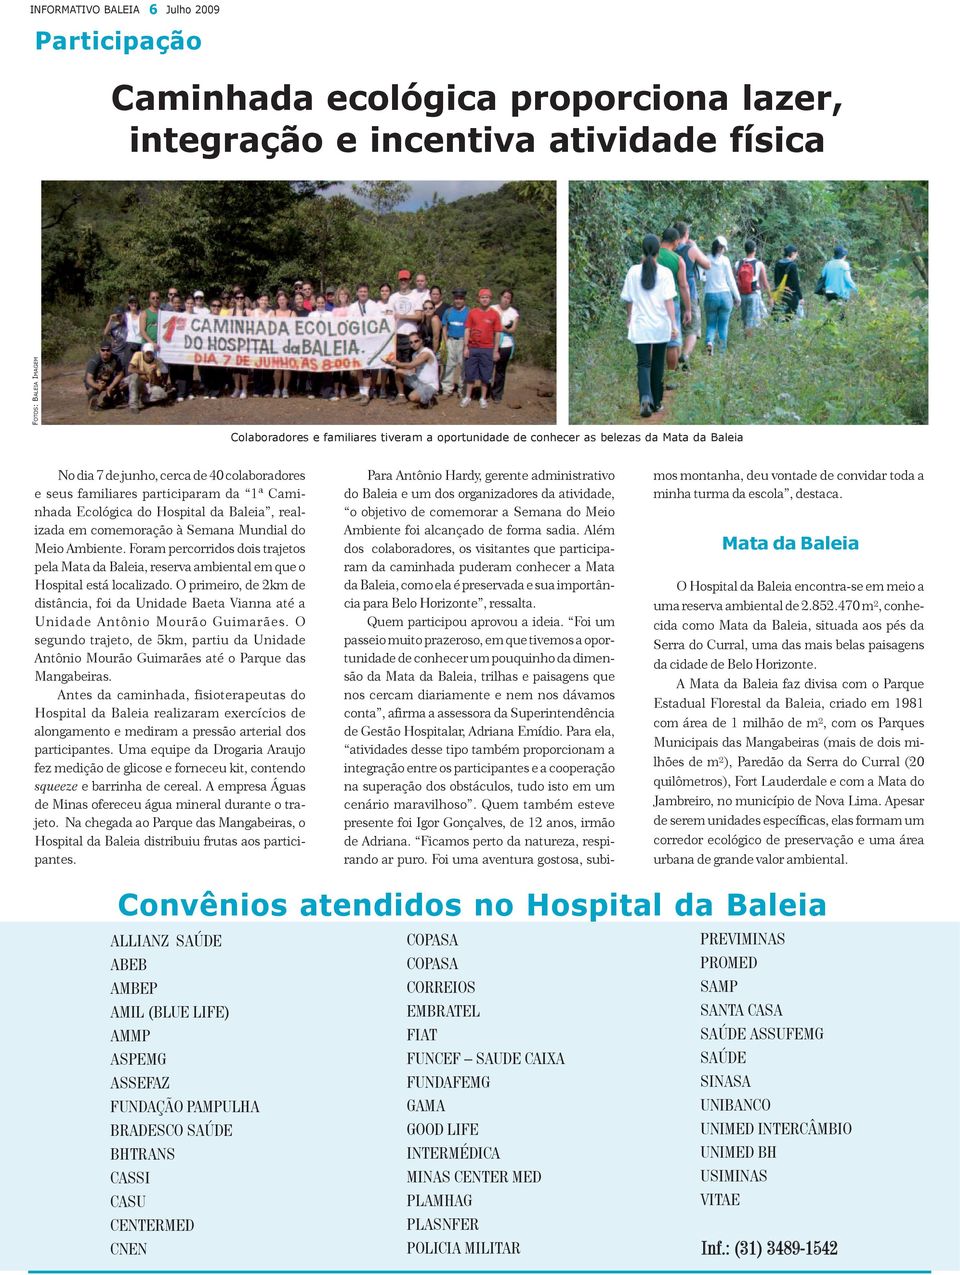 Mundial do Meio Ambiente. Foram percorridos dois trajetos pela Mata da Baleia, reserva ambiental em que o Hospital está localizado.